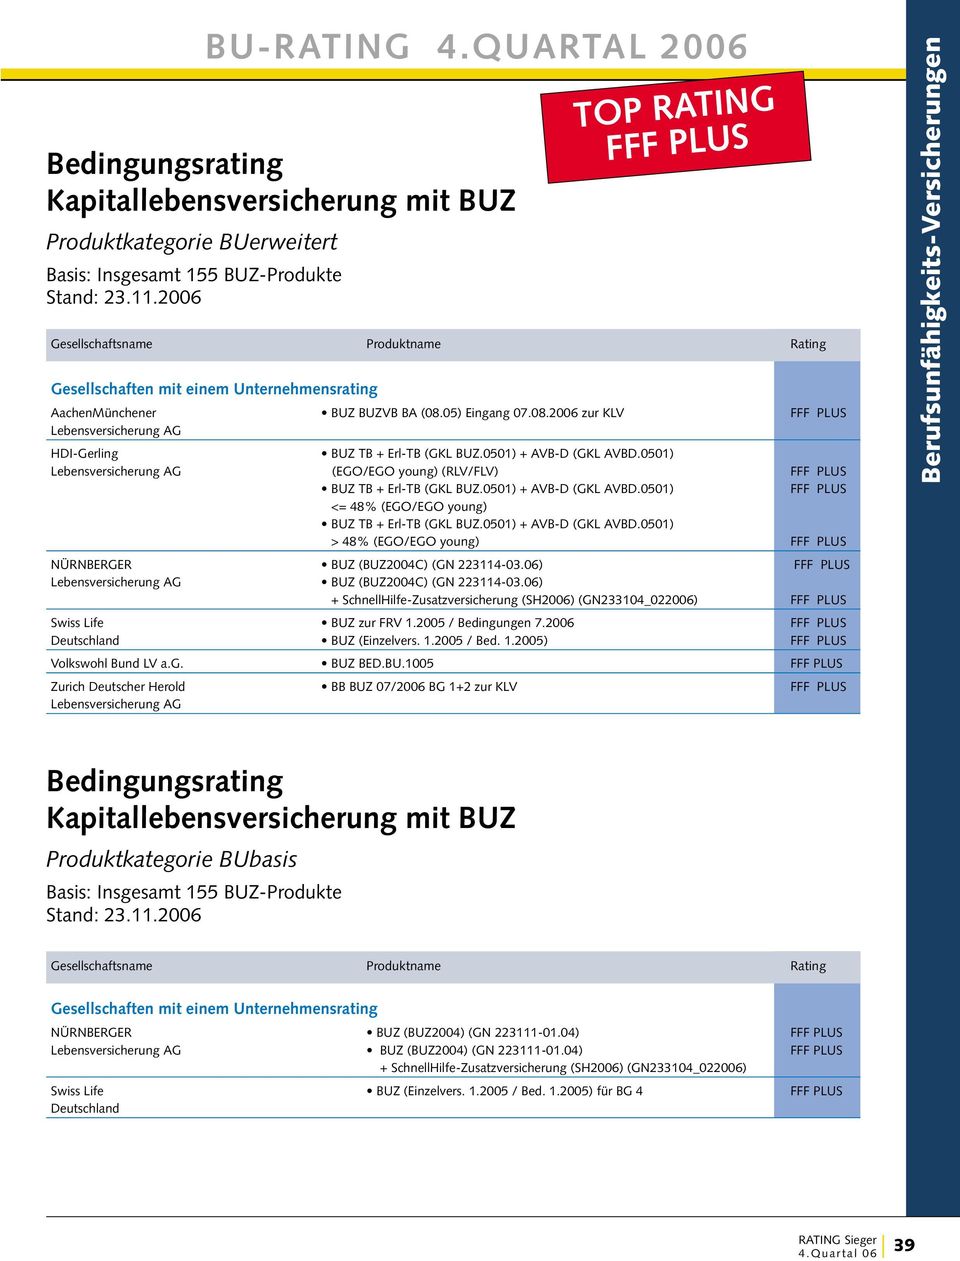 06) BUZ (BUZ2004C) (GN 223114-03.06) Swiss Life BUZ zur FRV 1.2005 / Bedingungen 7.2006 BUZ (Einzelvers. 1.2005 / Bed. 1.2005) Volkswohl Bund LV a.g. BUZ BED.BU.1005 Zurich Deutscher Herold BB BUZ 07/2006 BG 1+2 zur KLV Kapitallebensversicherung mit BUZ Basis: Insgesamt 155 BUZ-Produkte NÜRNBERGER BUZ (BUZ2004) (GN 223111-01.